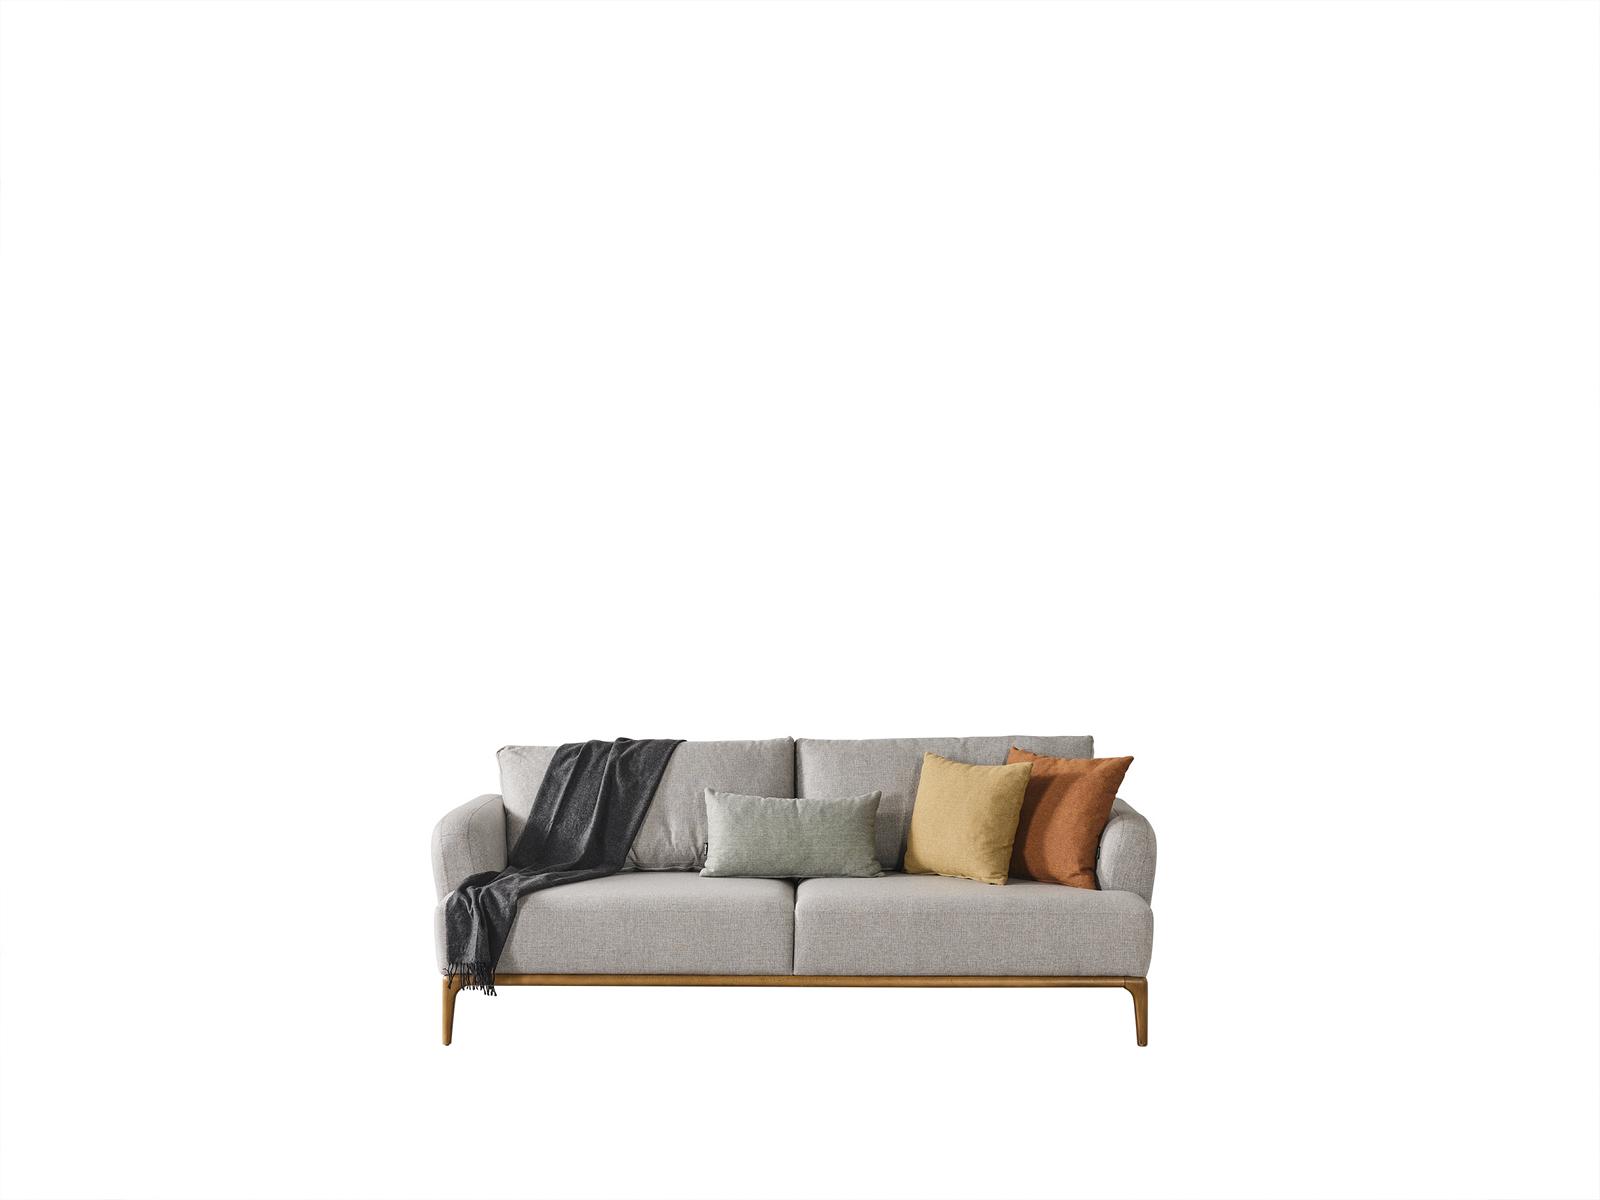 Sofa Couch Wohnzimmer Sofas Textil Stoff Polster Couchen xxl Dreisitzer